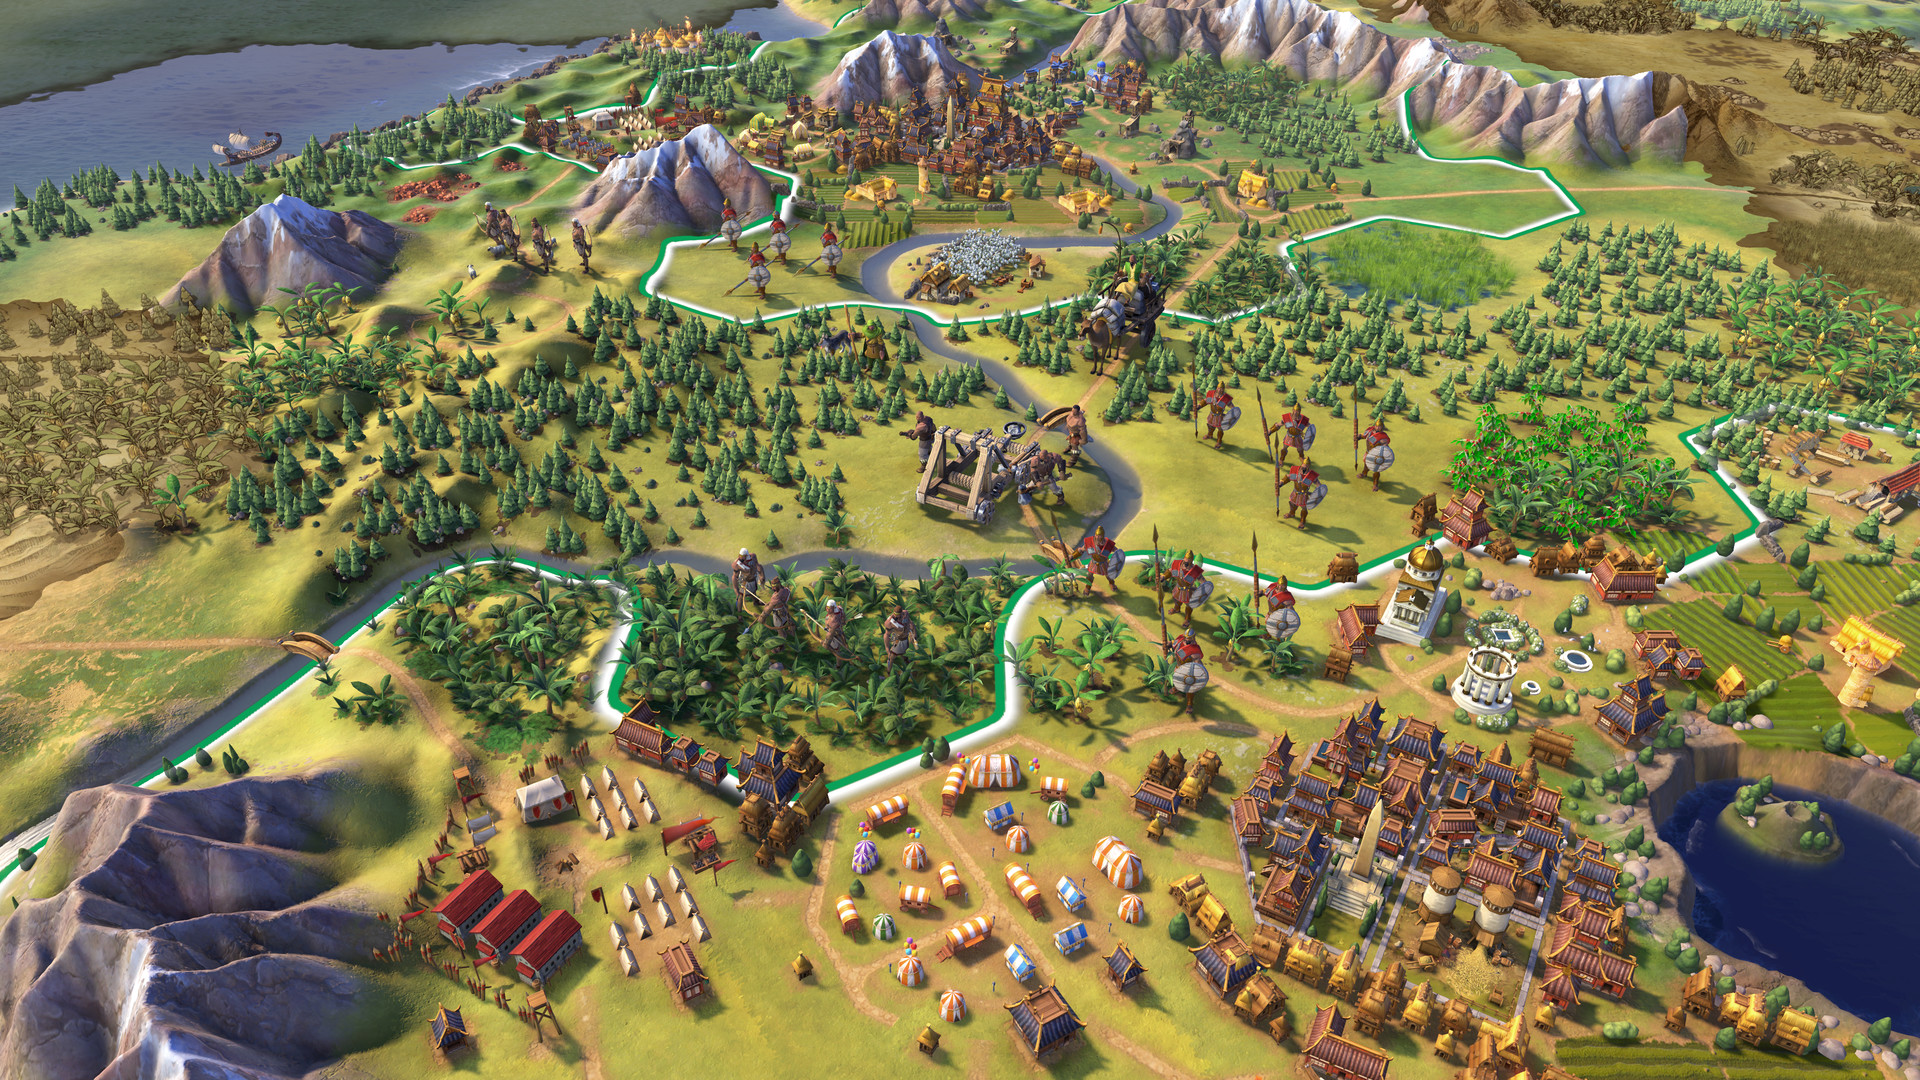 <b>Sid Meier's Civilization VI Gold Edition</b>
<br>
<br>
Ako ste ikad imali ambicije biti vođa nekog narod, Civilization VI vjerojatno je ponajbolja simulacija  takvog scenarija. U ovoj verziji, uz igru su uključeni i svi dodatci, poput šest dodatnih civilizacija i ekspanzije Rise and Fall.
<br>
<br>
Sid Meier's Civilization VI Gold Edition je snižen 69 posto, sa <a href="https://store.steampowered.com/bundle/9193/Sid_Meiers_Civilization_VI_Gold_Edition/"><b><u>127,92 eura na 39,97 eura</u></b></a>.